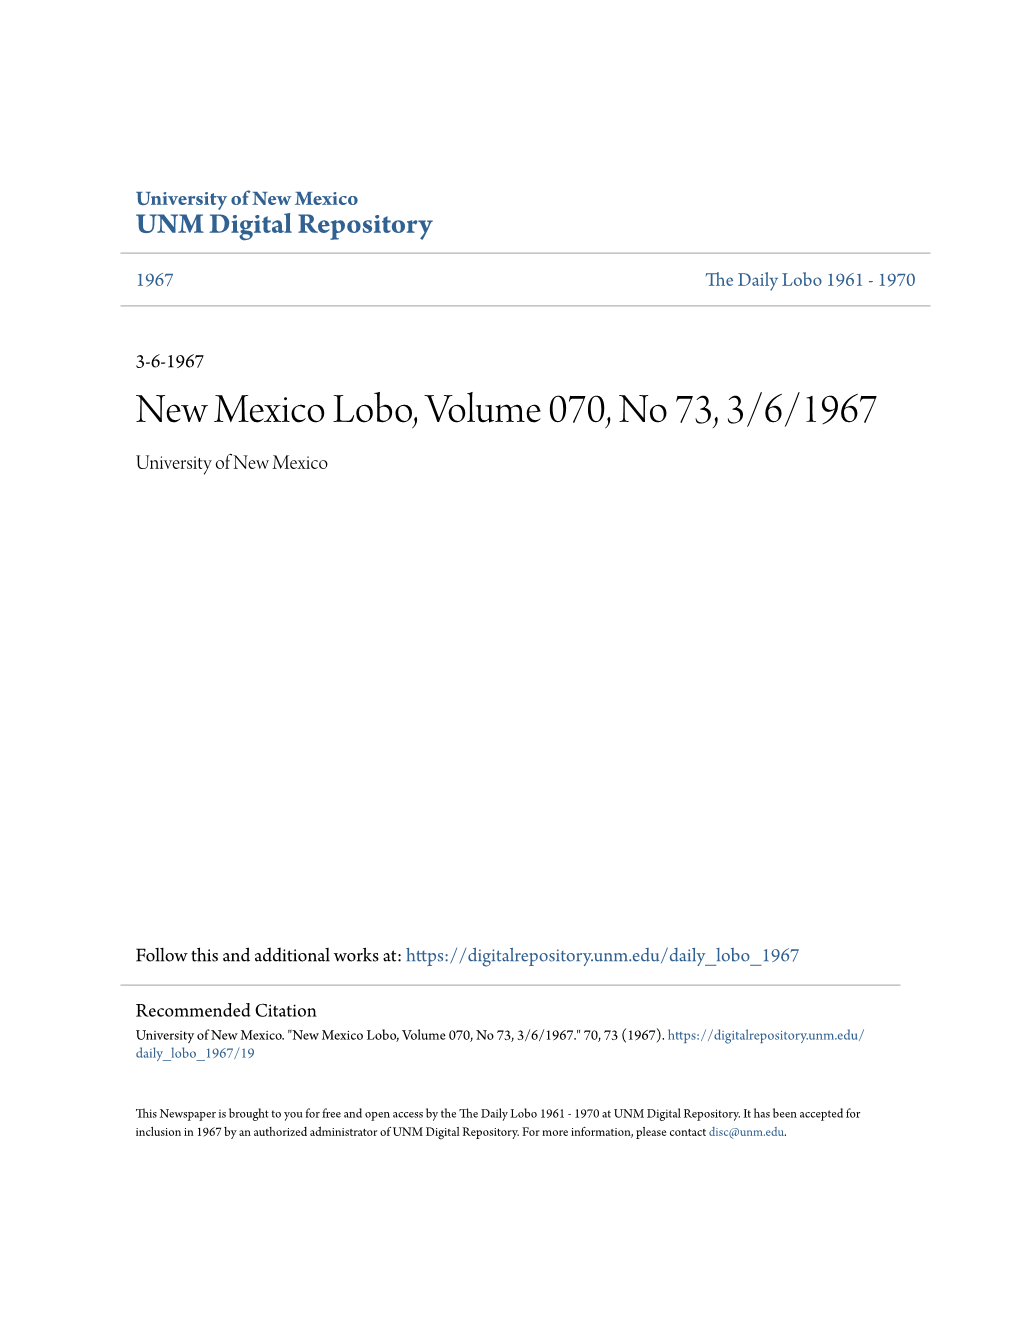 New Mexico Lobo, Volume 070, No 73, 3/6/1967 University of New Mexico